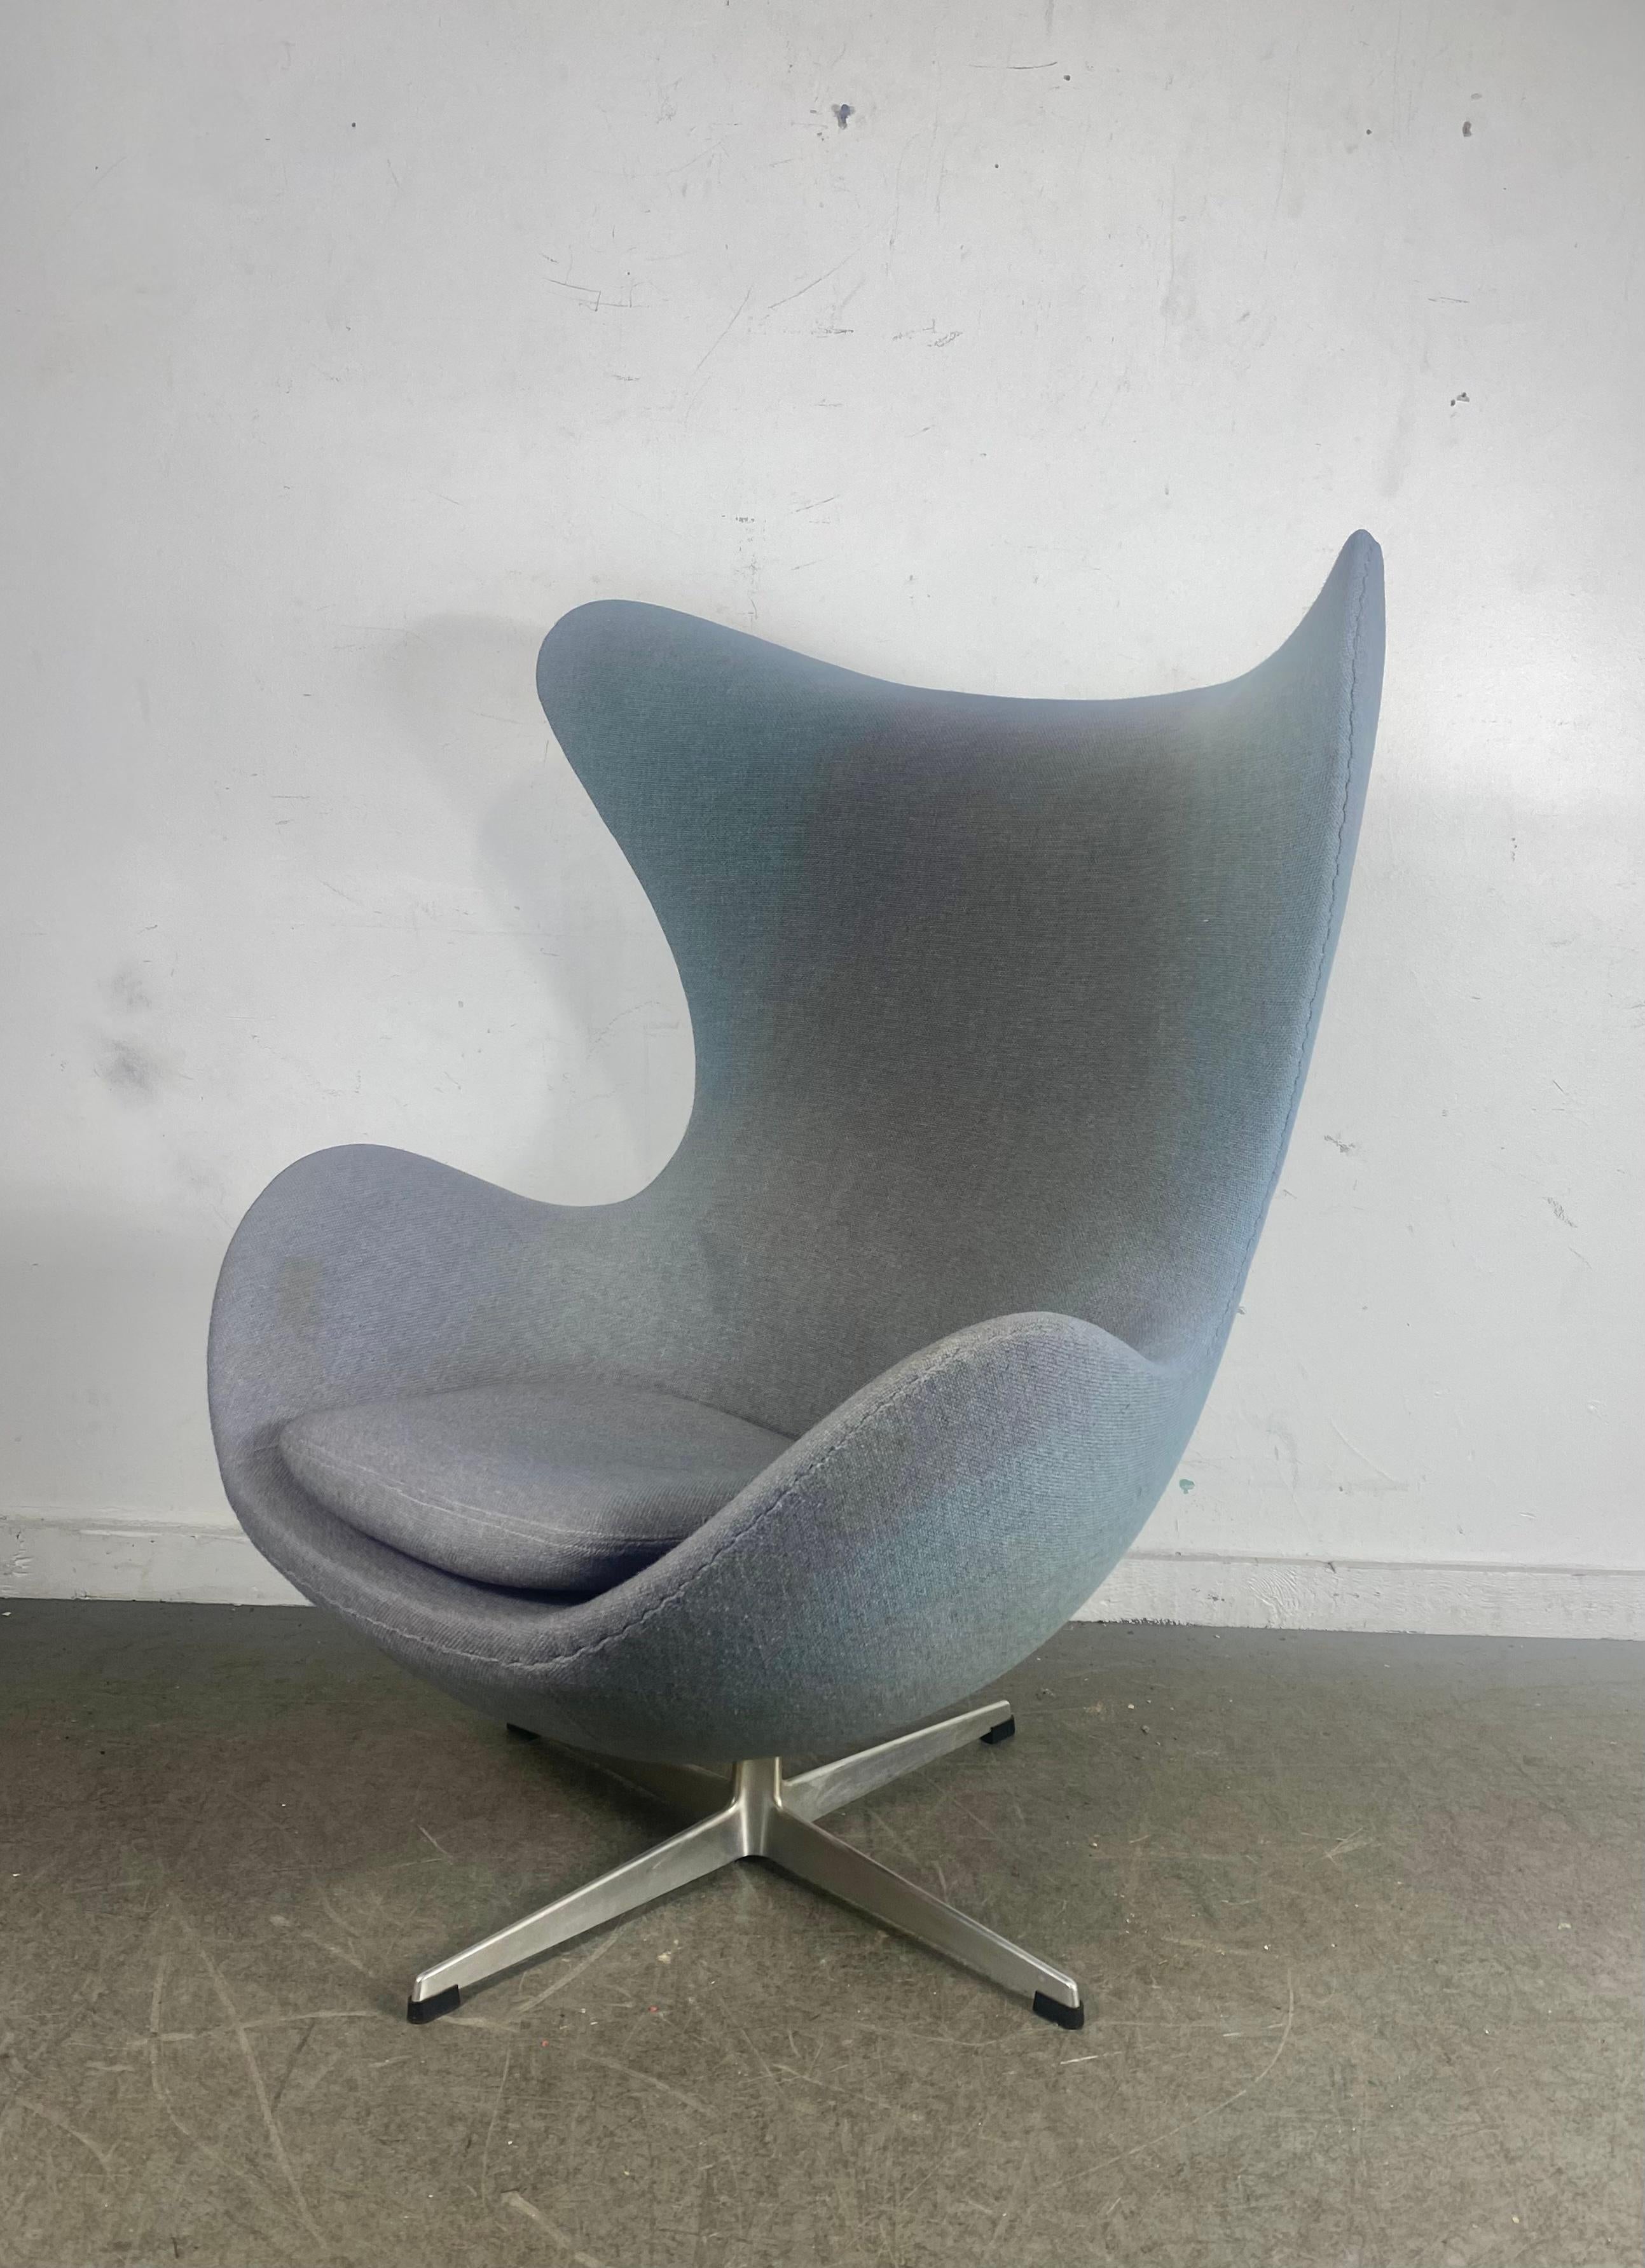 Mid-20th Century Classic 1960s  Egg Chair designed by Arne Jacobsen for Fritzhansen / Denmark